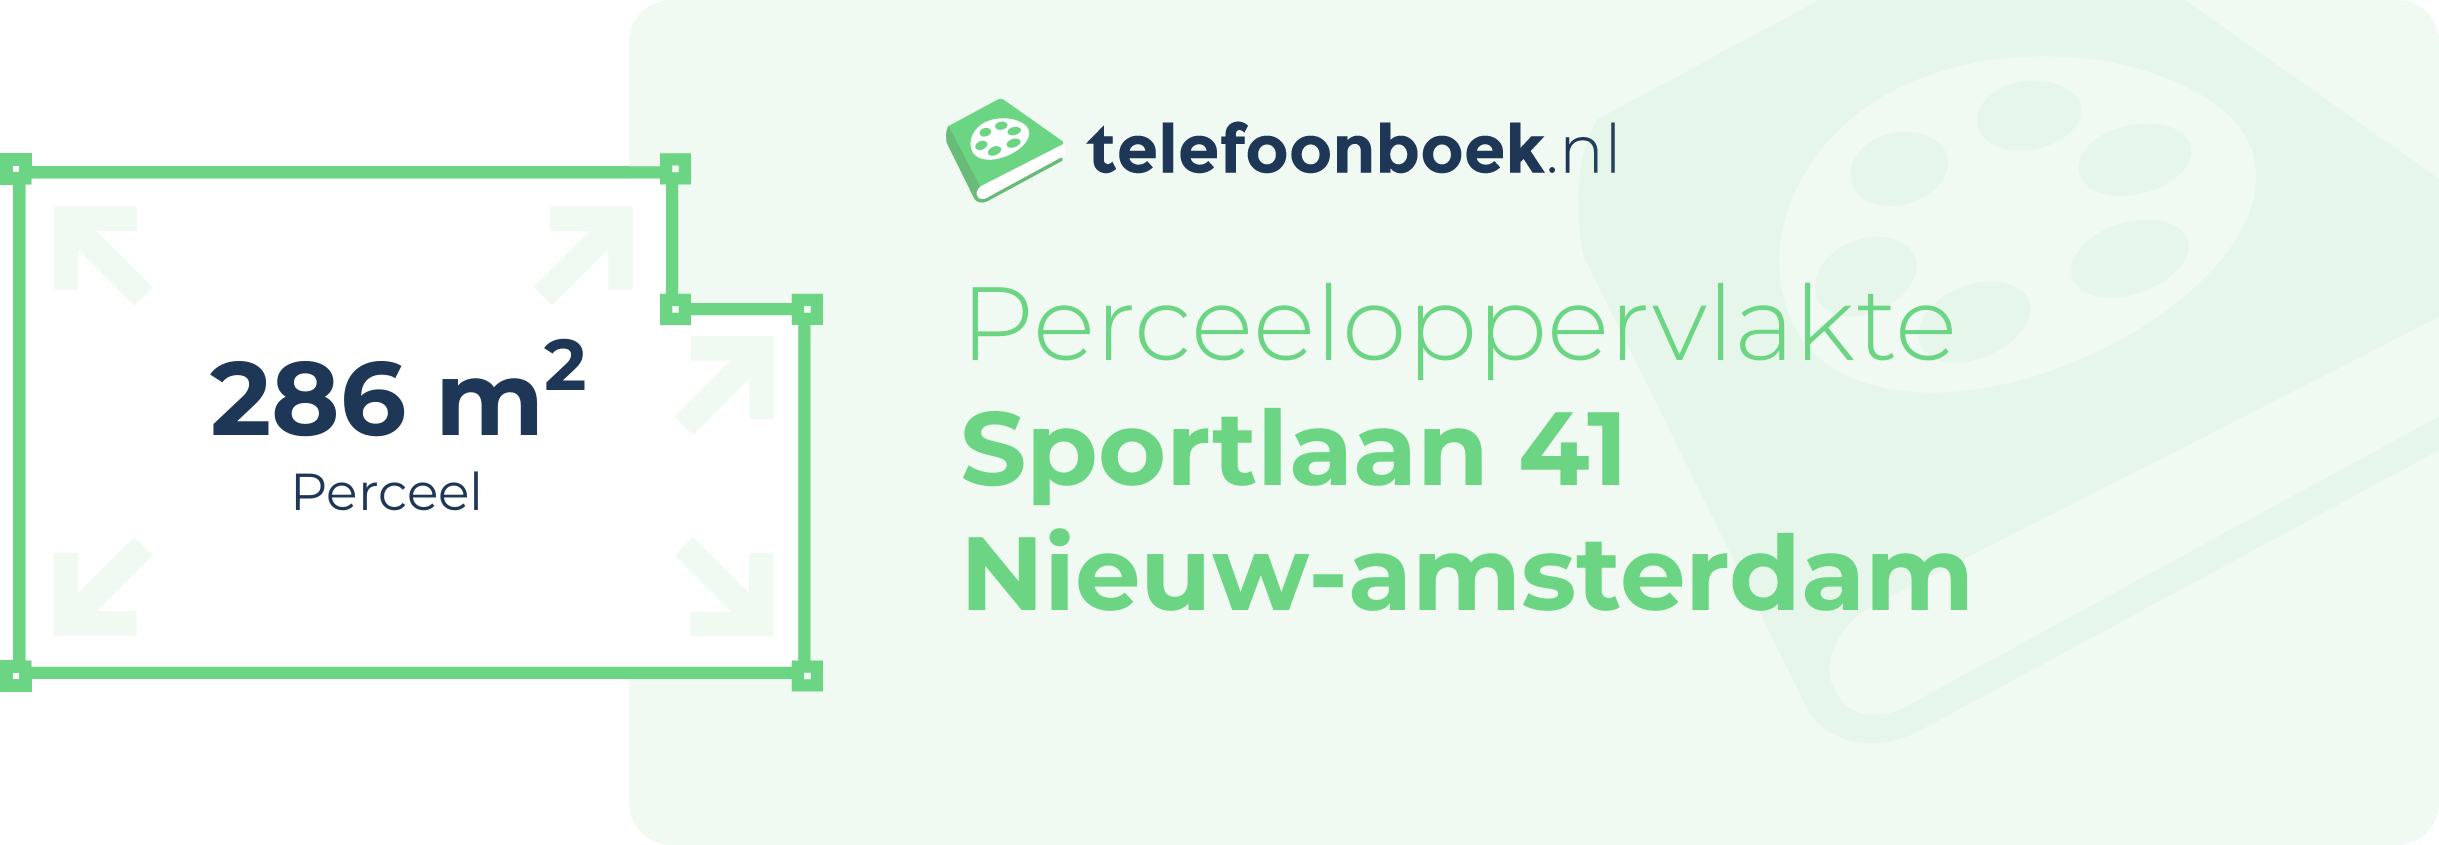 Perceeloppervlakte Sportlaan 41 Nieuw-Amsterdam